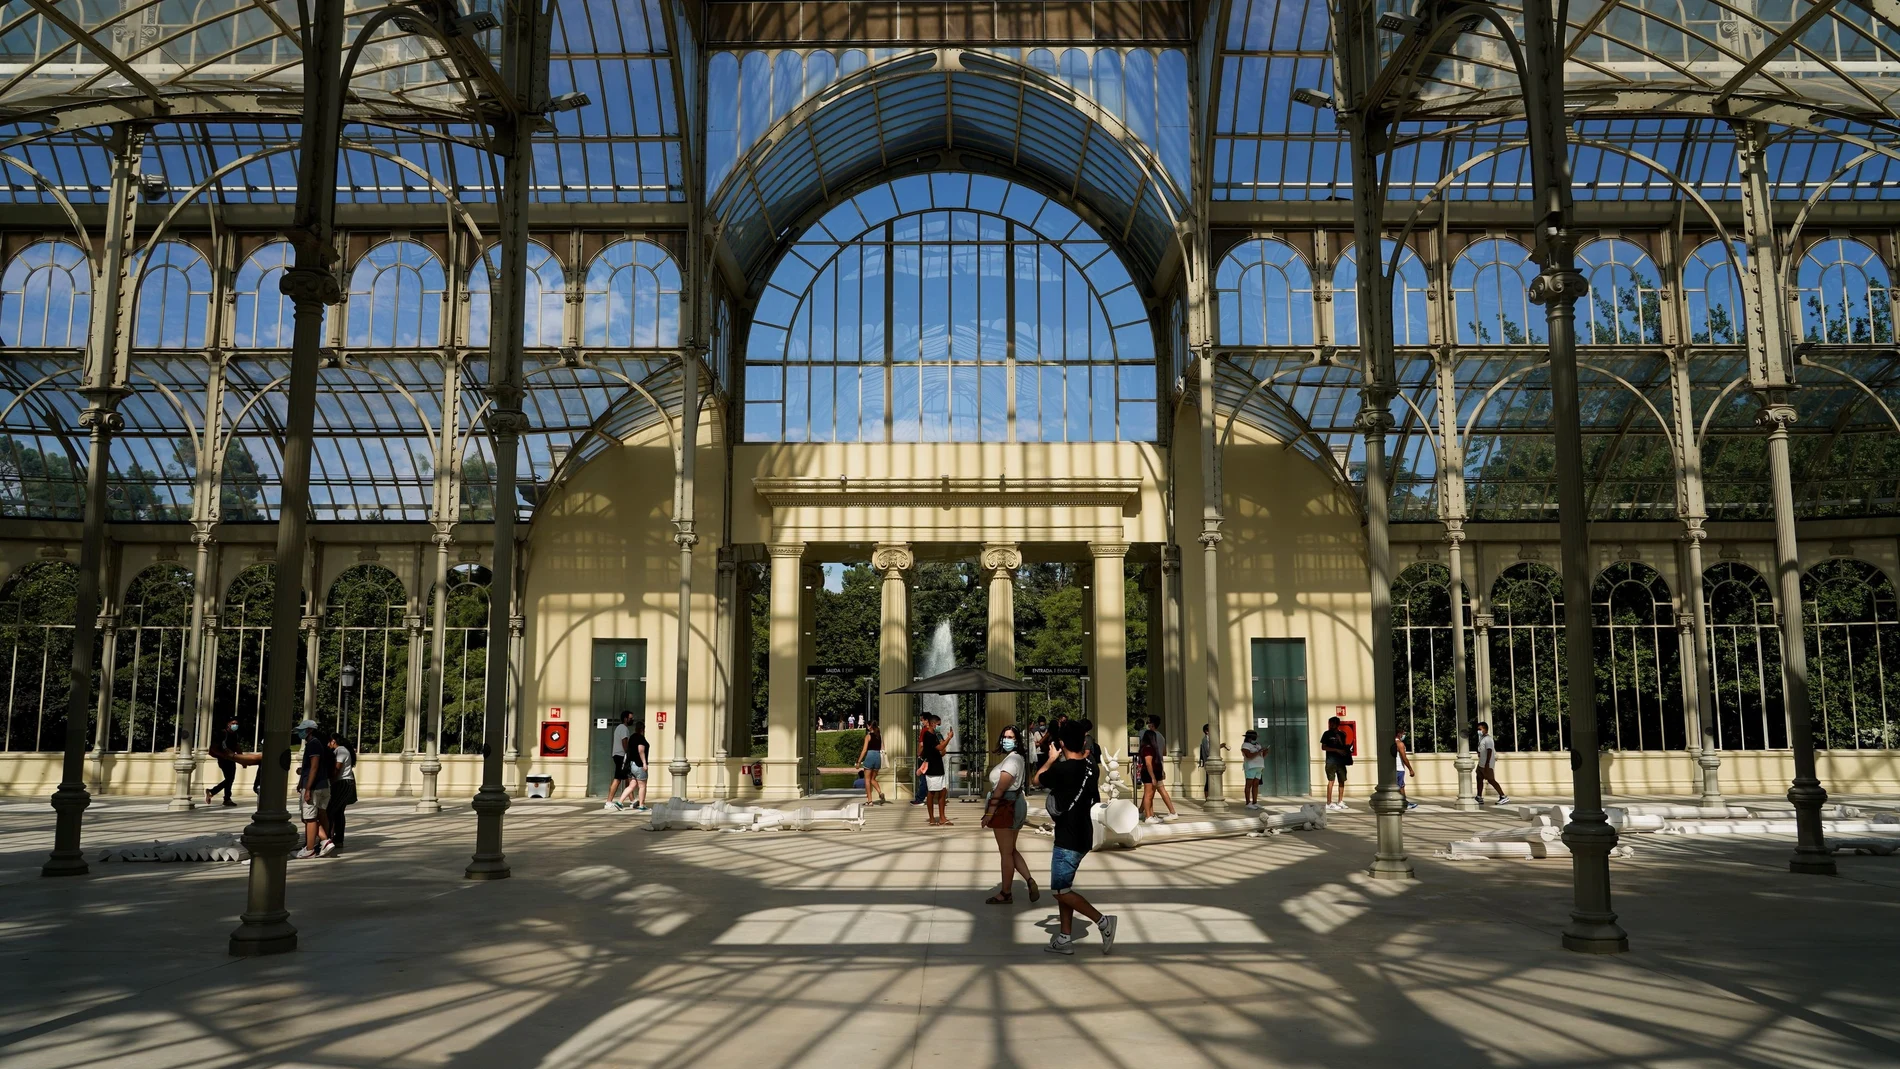 El Palacio de Cristal, situado en el parque de El Retiro, declarado este domingo 25 de julio Patrimonio Mundial